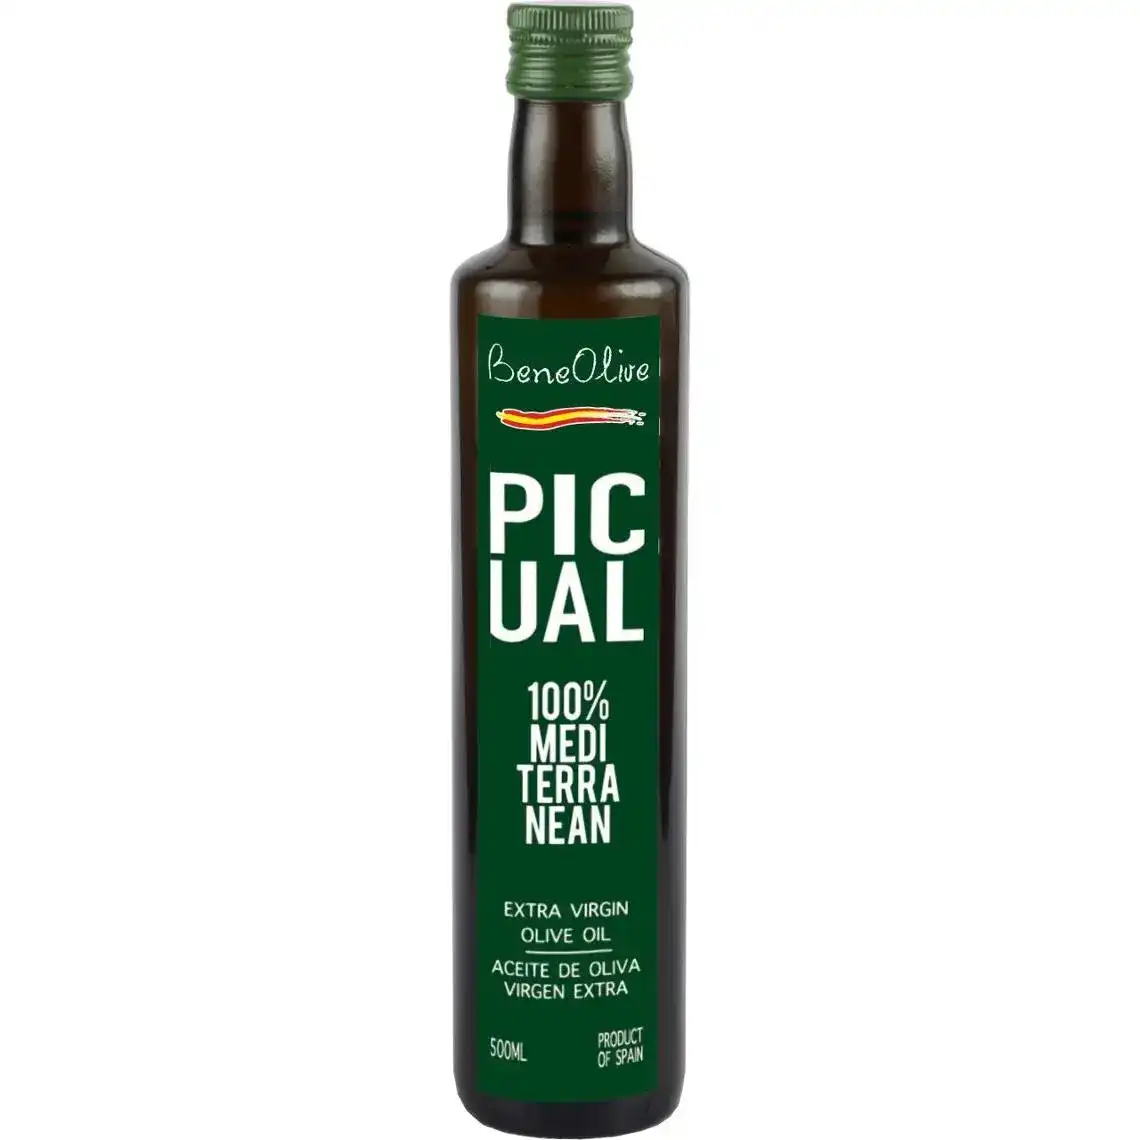 Олія оливкова Beneolive Picual 100% Середземноморська нерафінована 500 мл